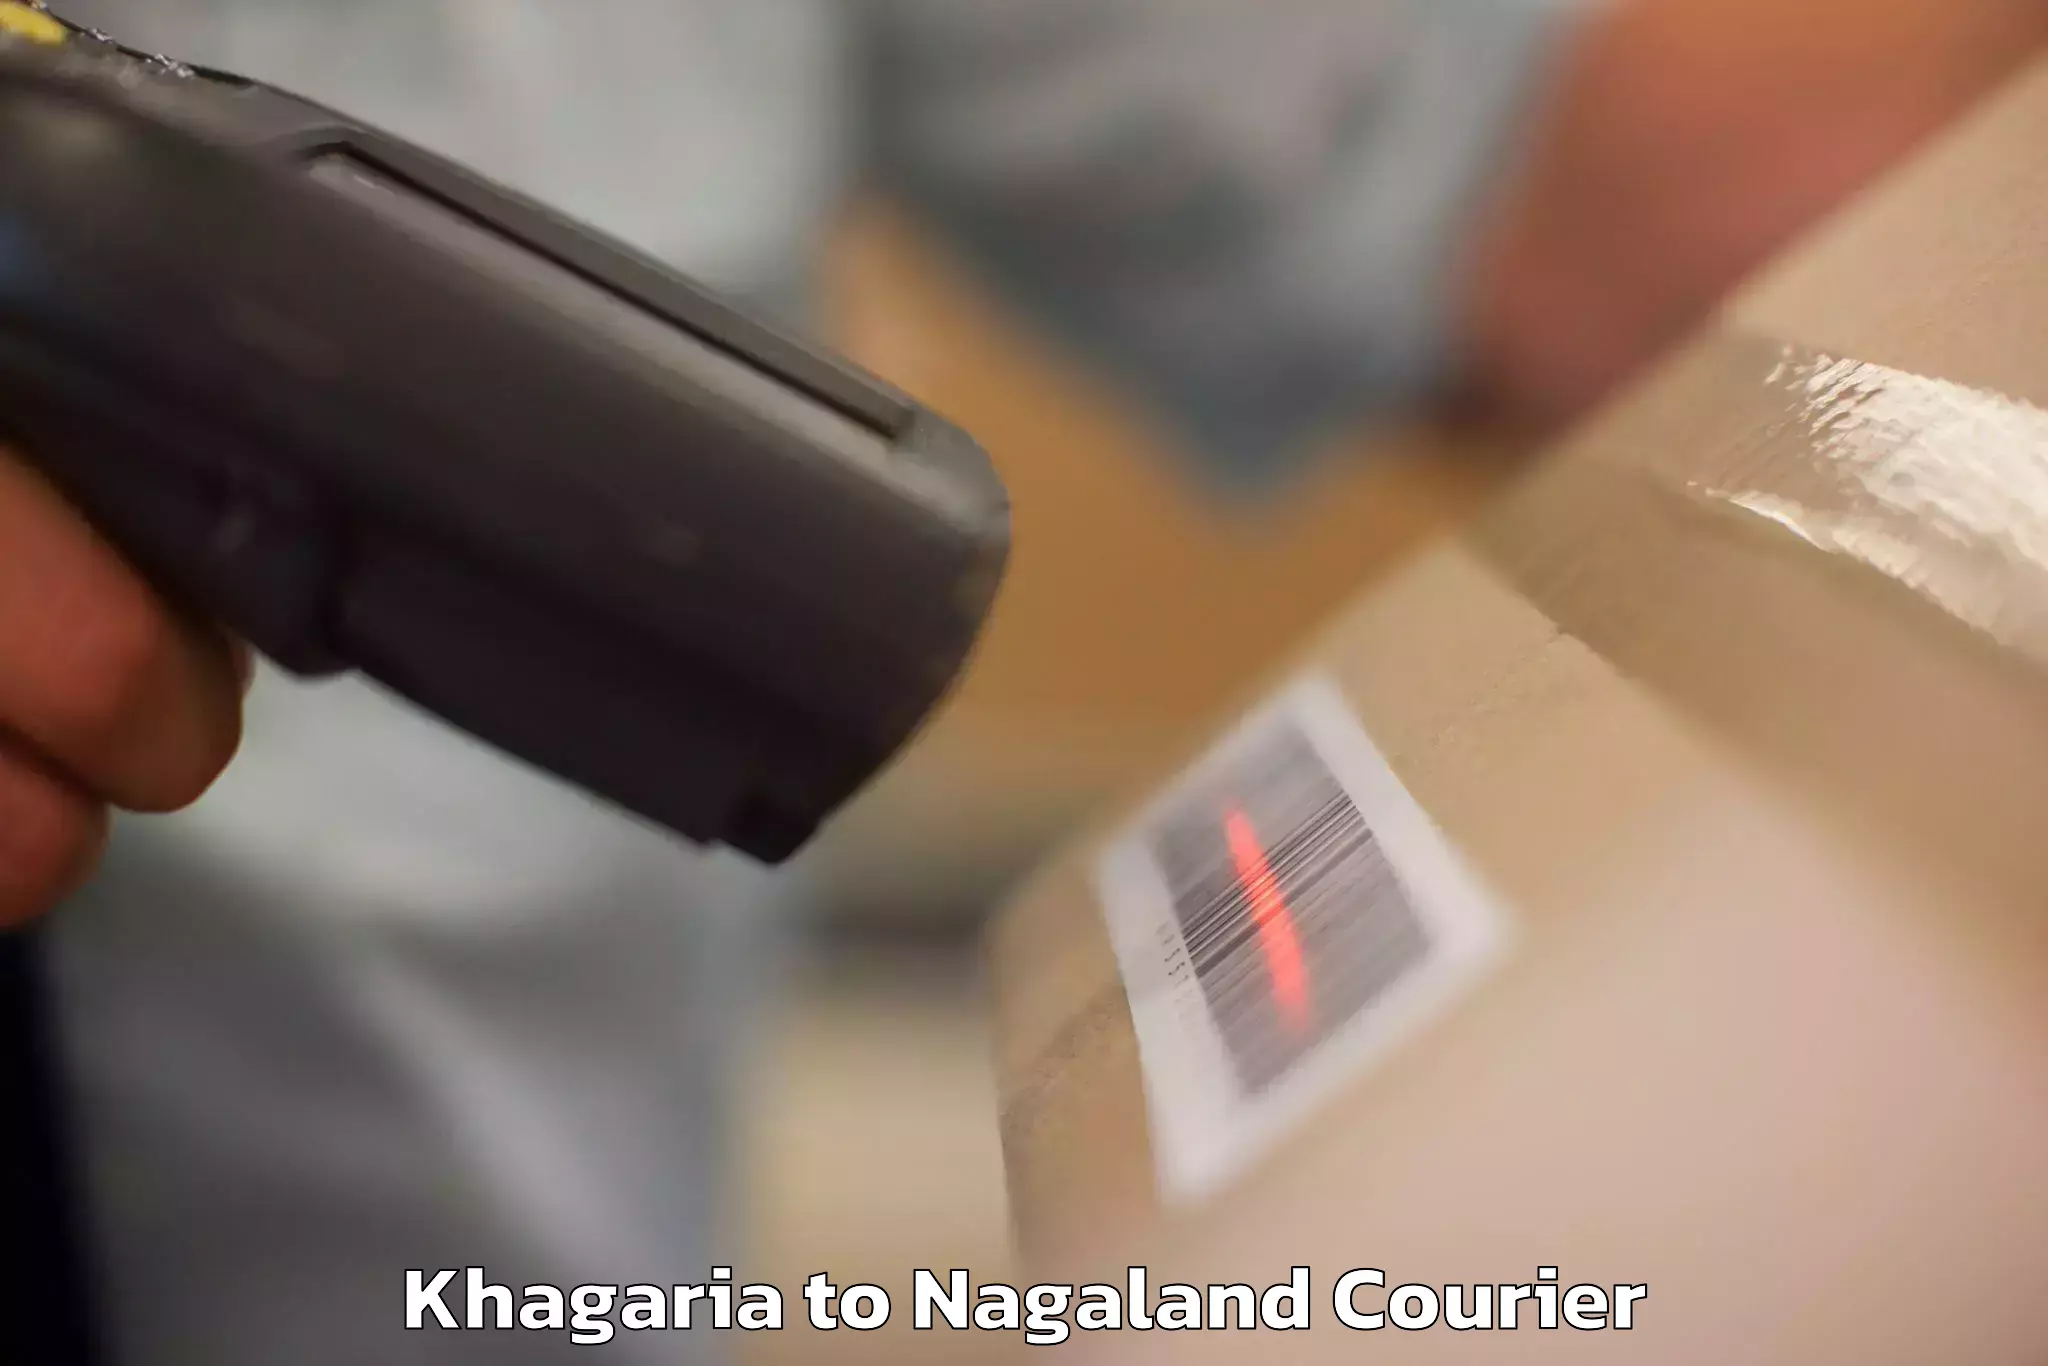 Baggage transport technology Khagaria to Wokha